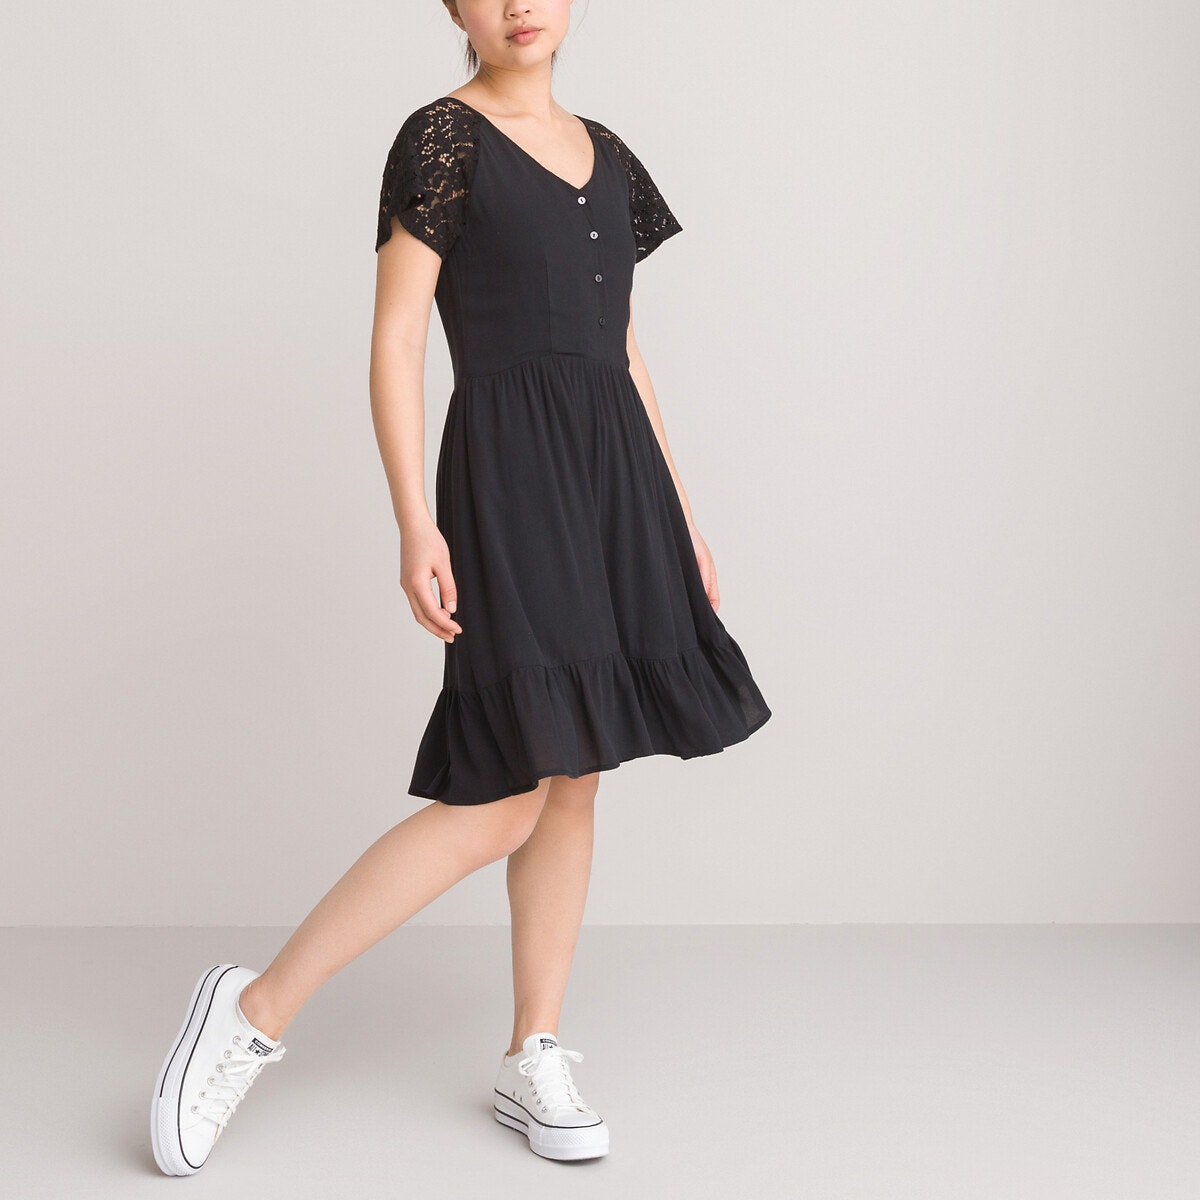 ΠΑΙΔΙ | Φορέματα | Κοντά μανίκια Κοντομάνικο φόρεμα σε ίσια γραμμή, 10-18 ετών